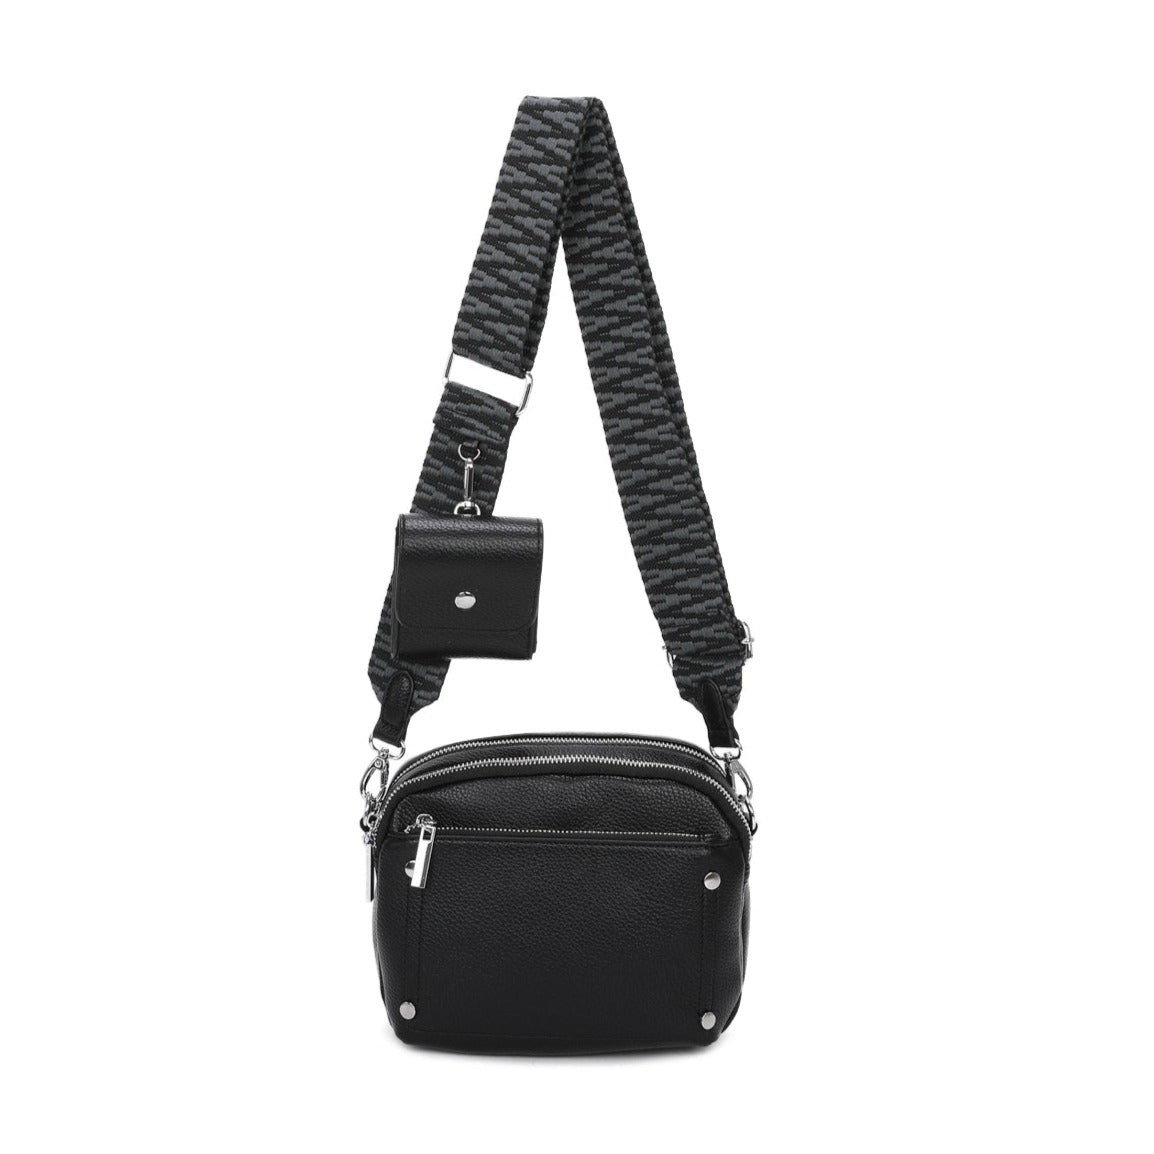 Double Zipper wide Crossbody Strap Bag